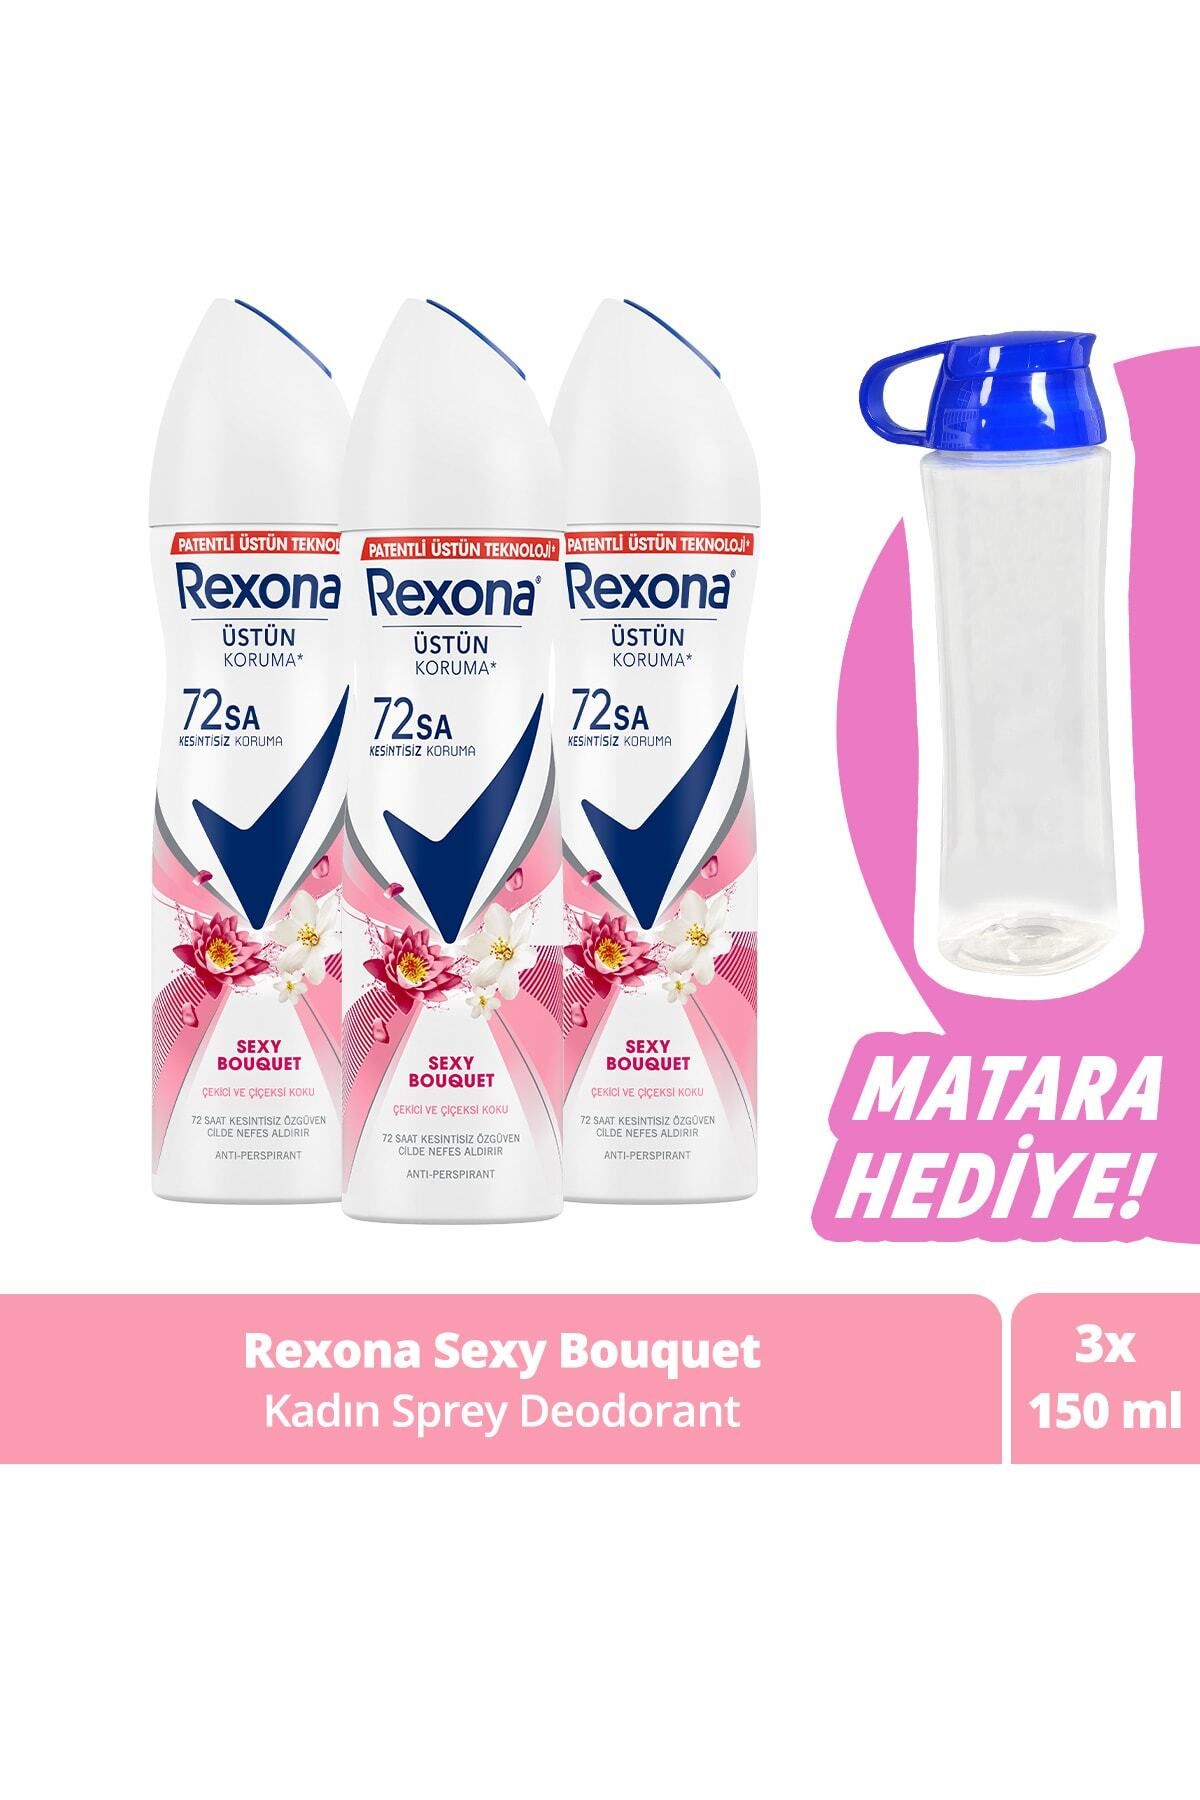 Rexona Kadın Sprey Deodorant Kadın Sexy Bouquet Ter Kokusuna Karşı Koruma 150 Ml X3 + Matara Hediye